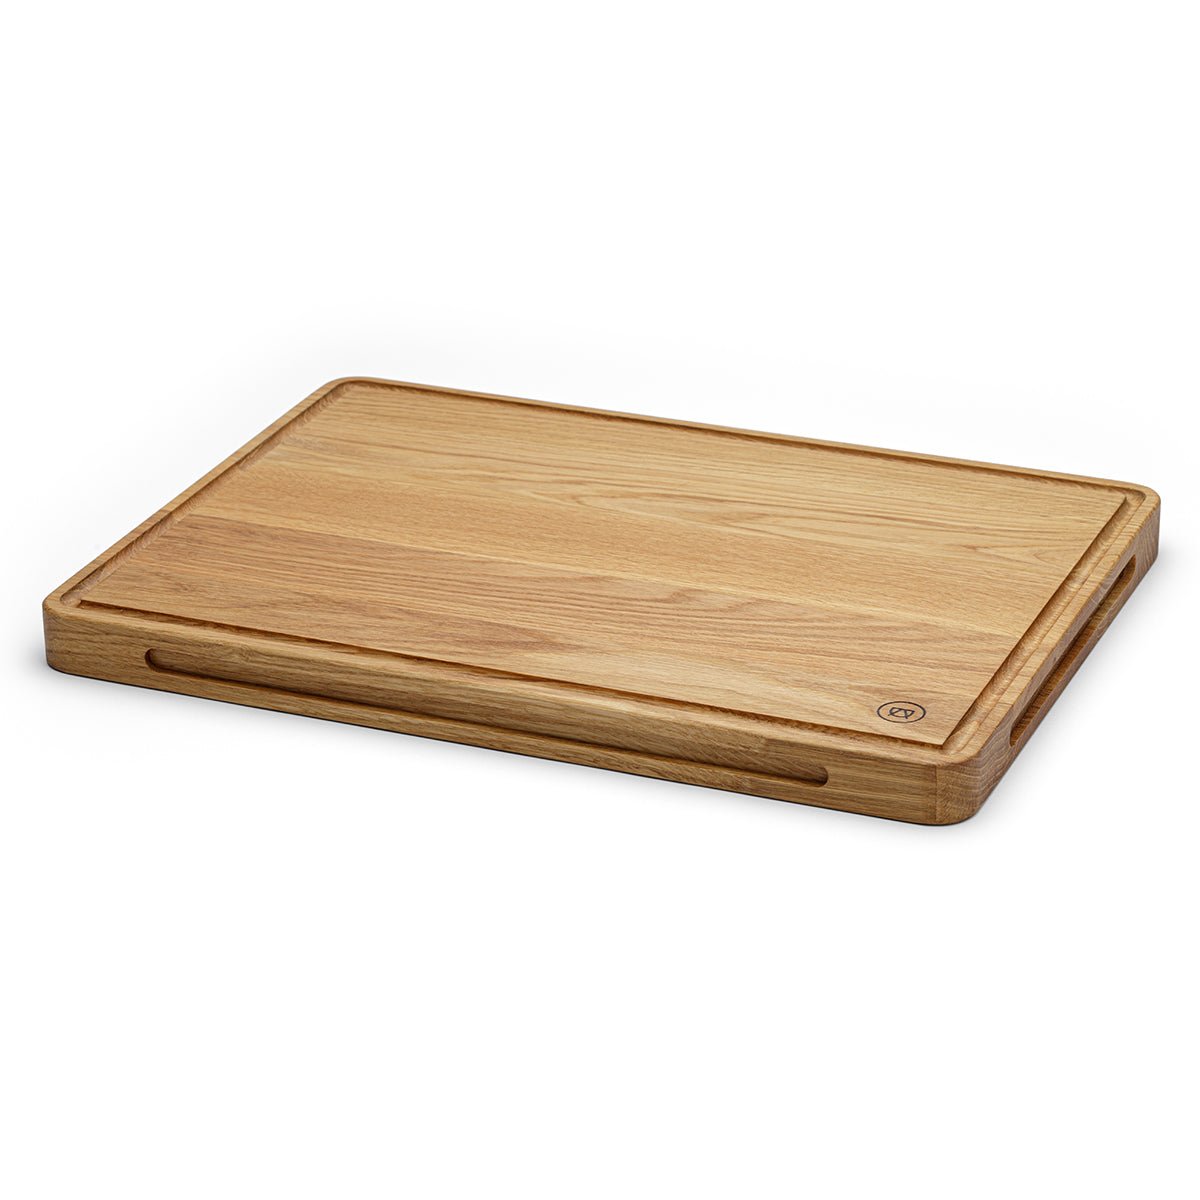 A true kitchen star “The Cutting Board” made of oak